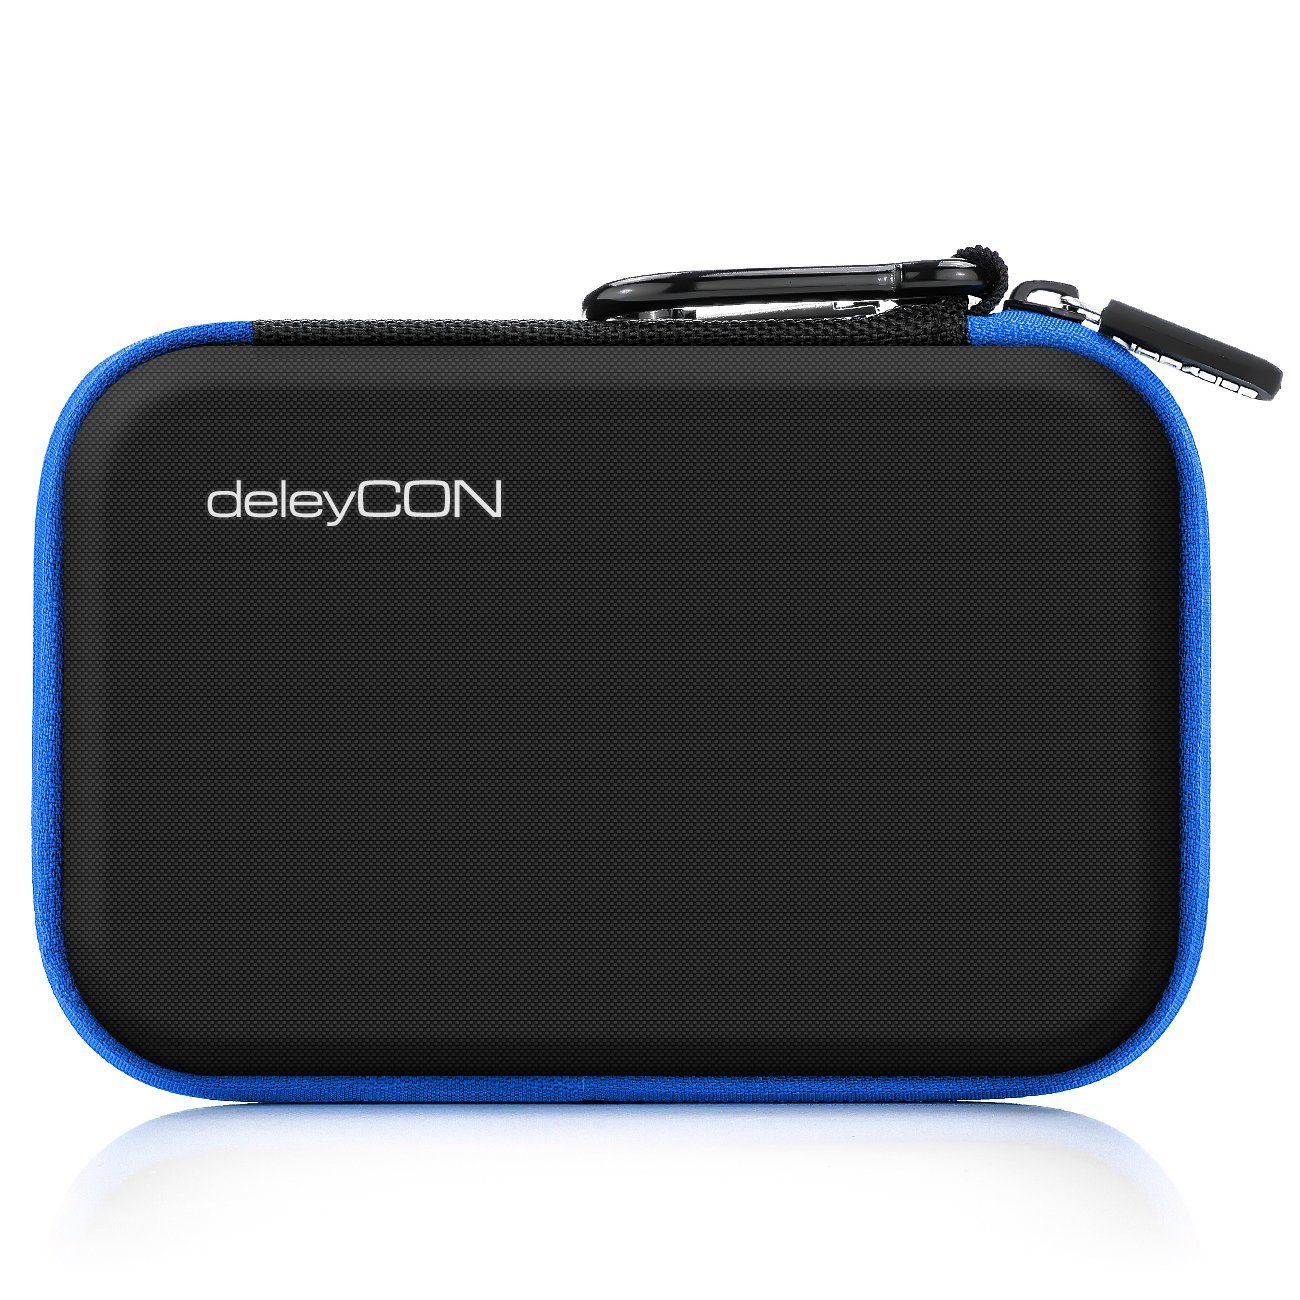 Case Fächer 2,5" 2 Zoll HDD deleyCON deleyCON SSD Festplattentasche Festplattentasche für